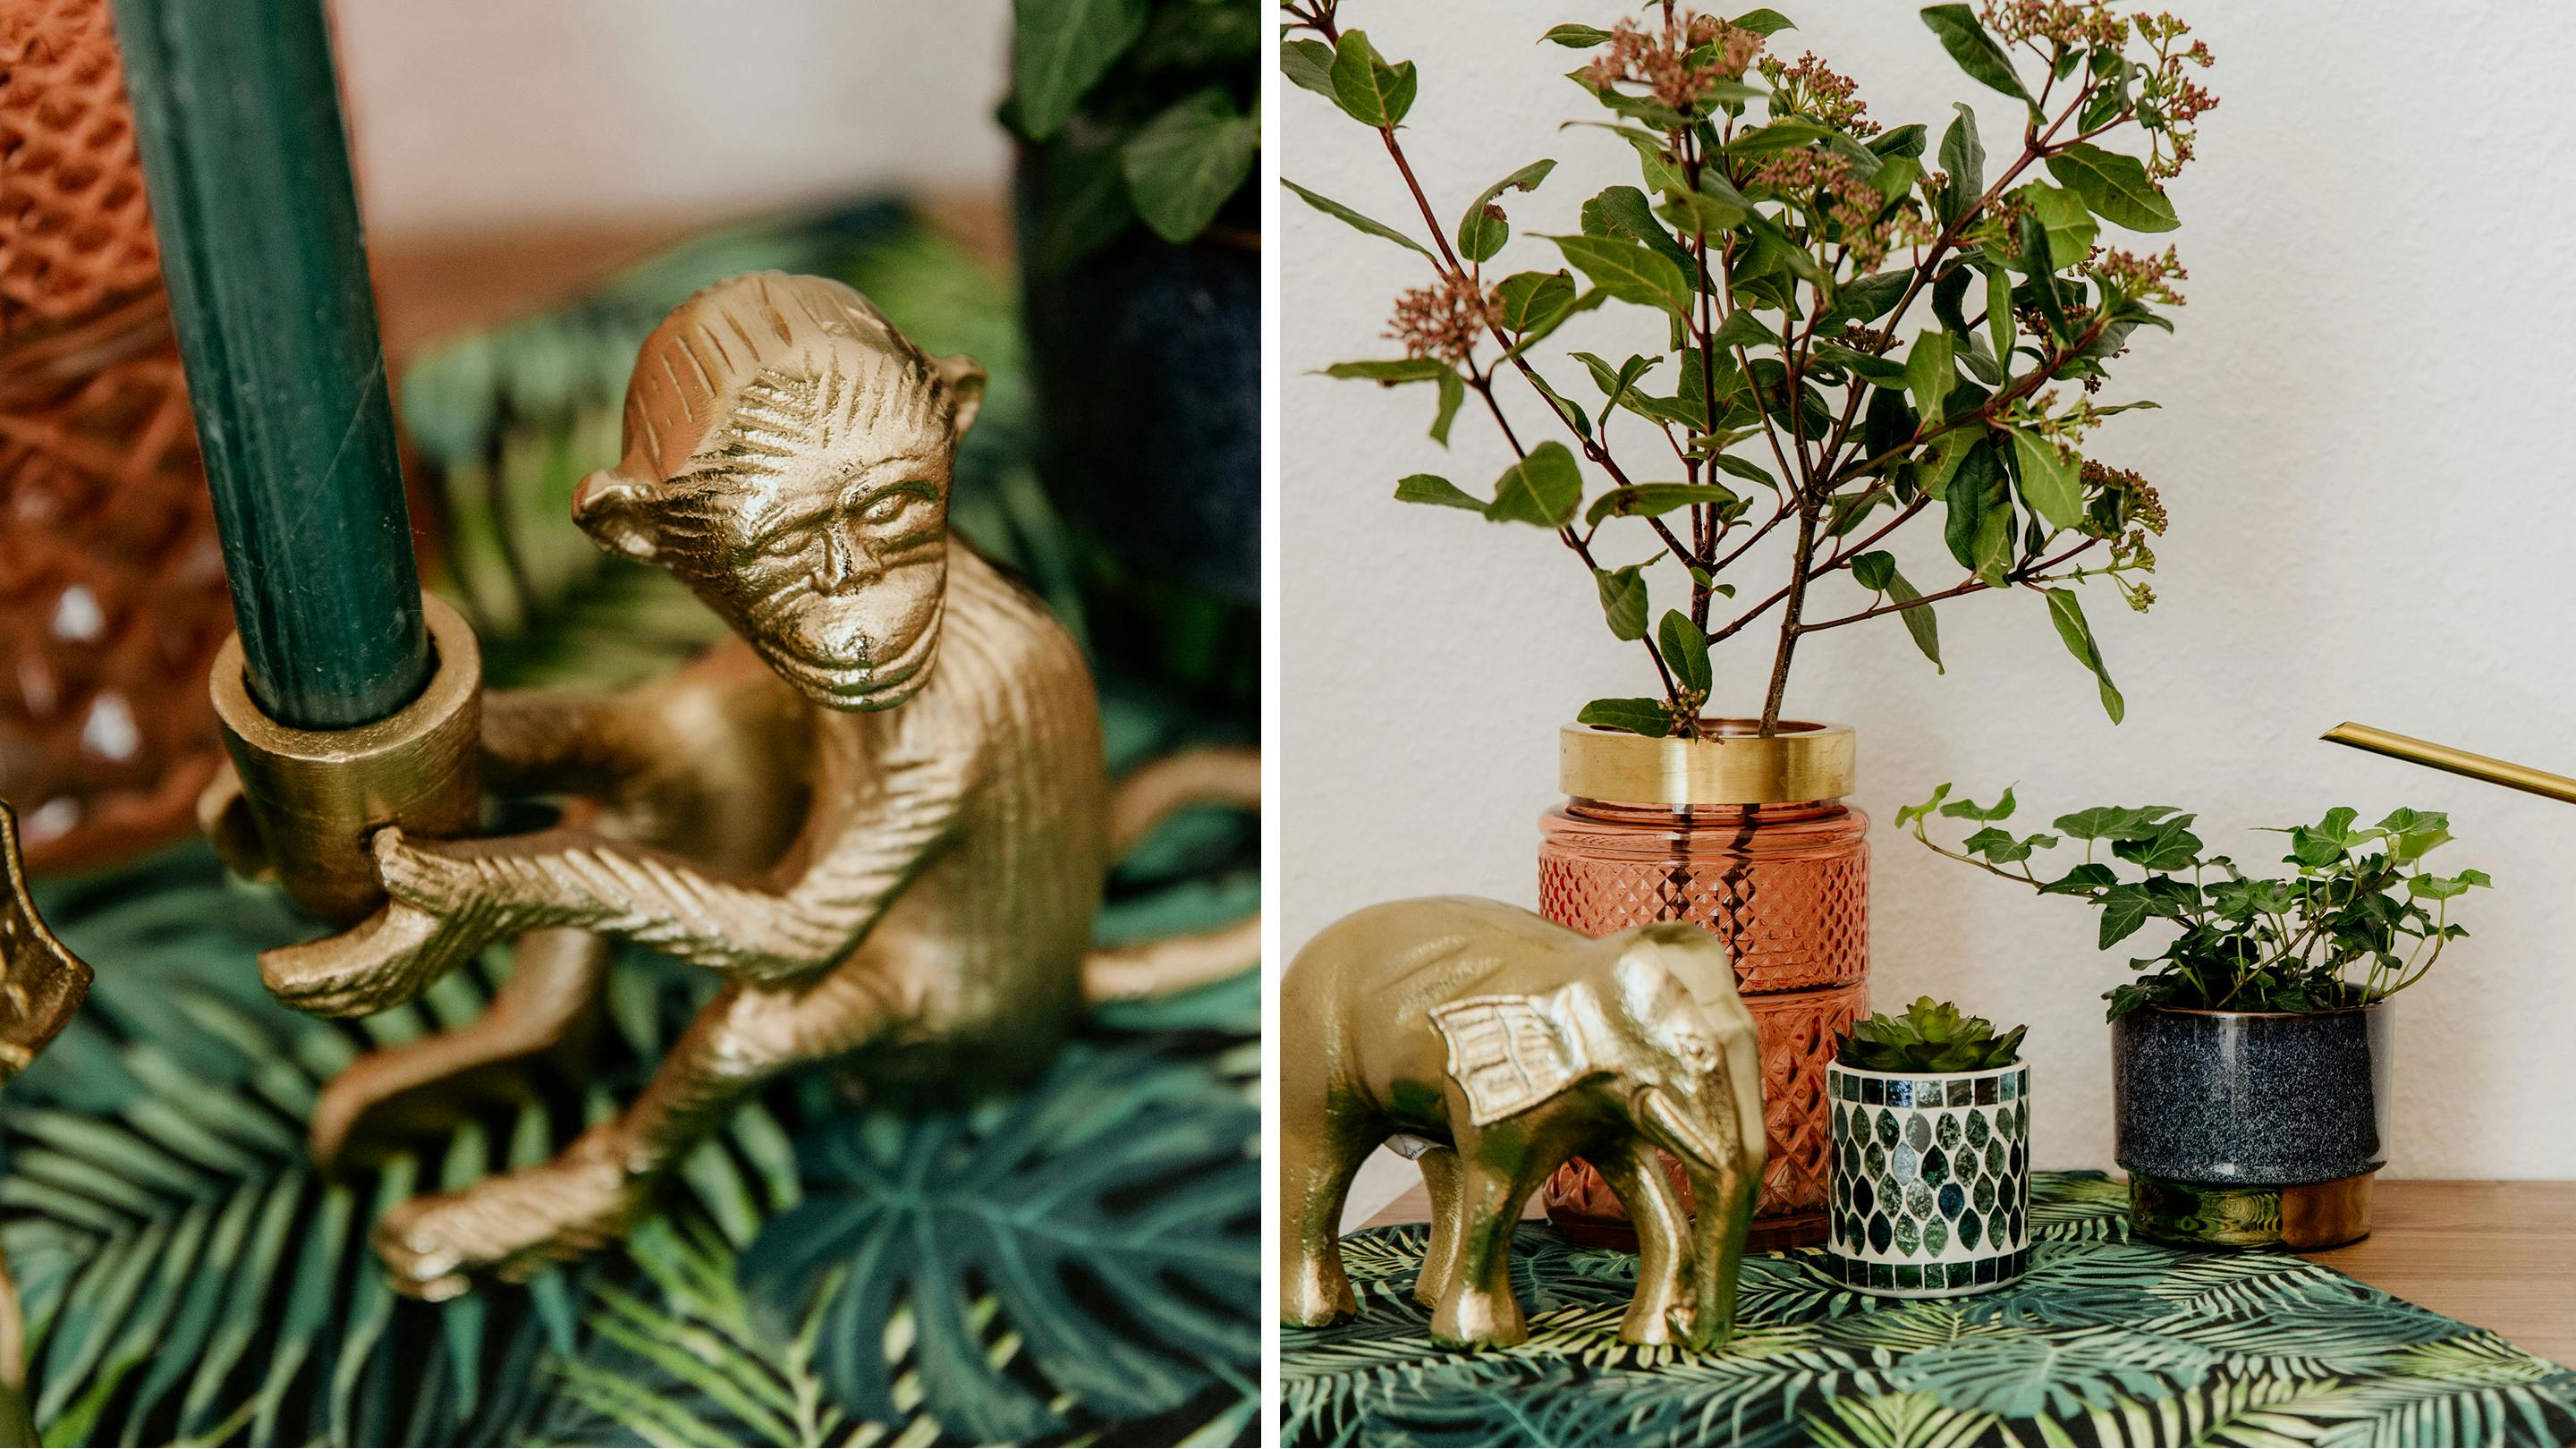 Gold und Grün gehen gut zusammen (Marke der Vasen und Deko-Objekte: Butlers).